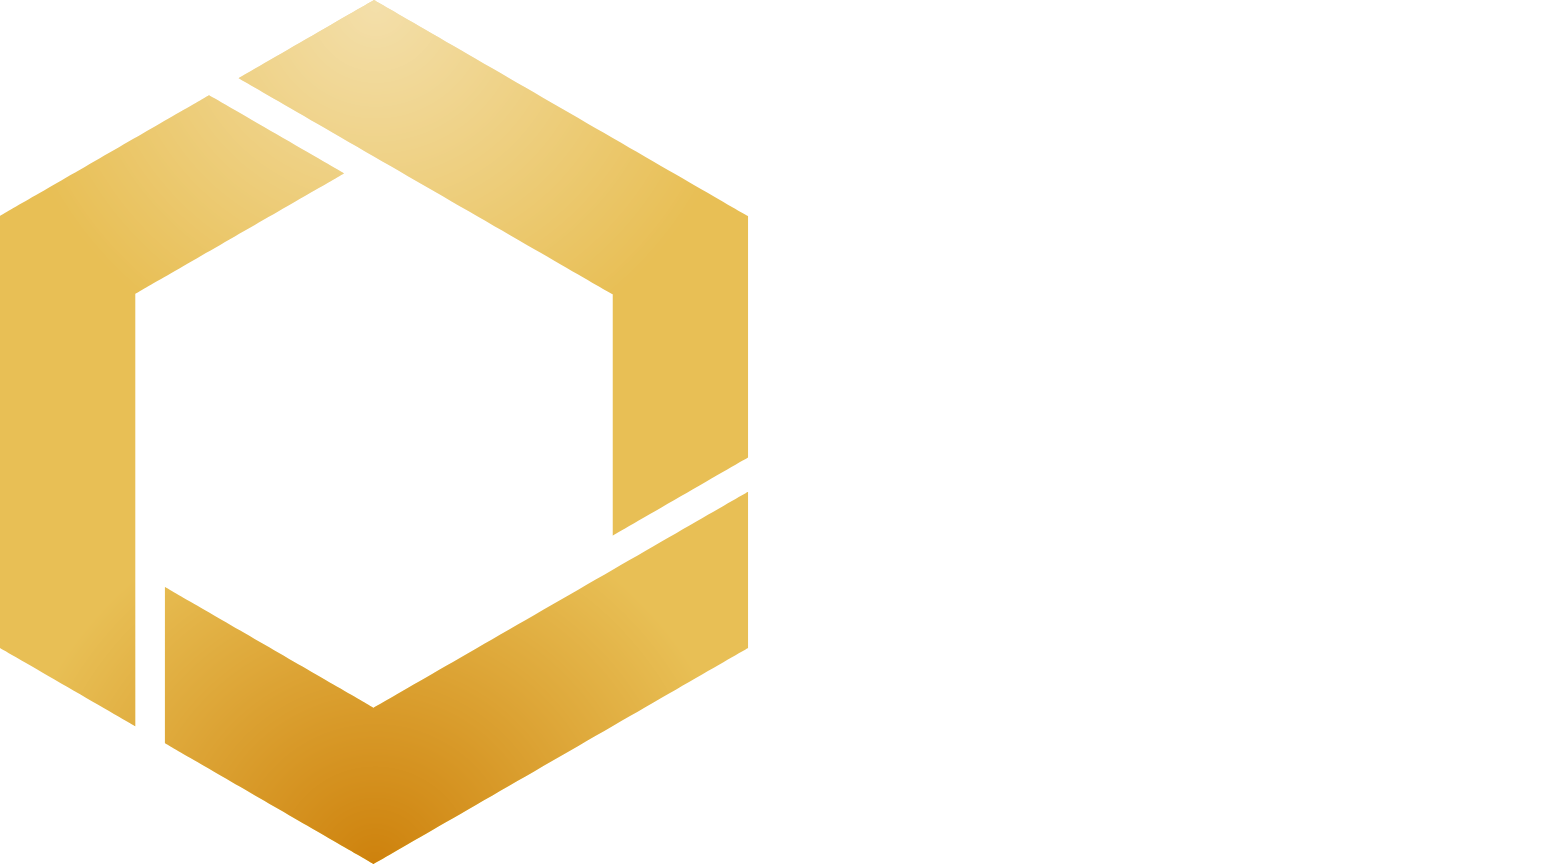 Orosur Mining logo large for dark backgrounds (transparent PNG)